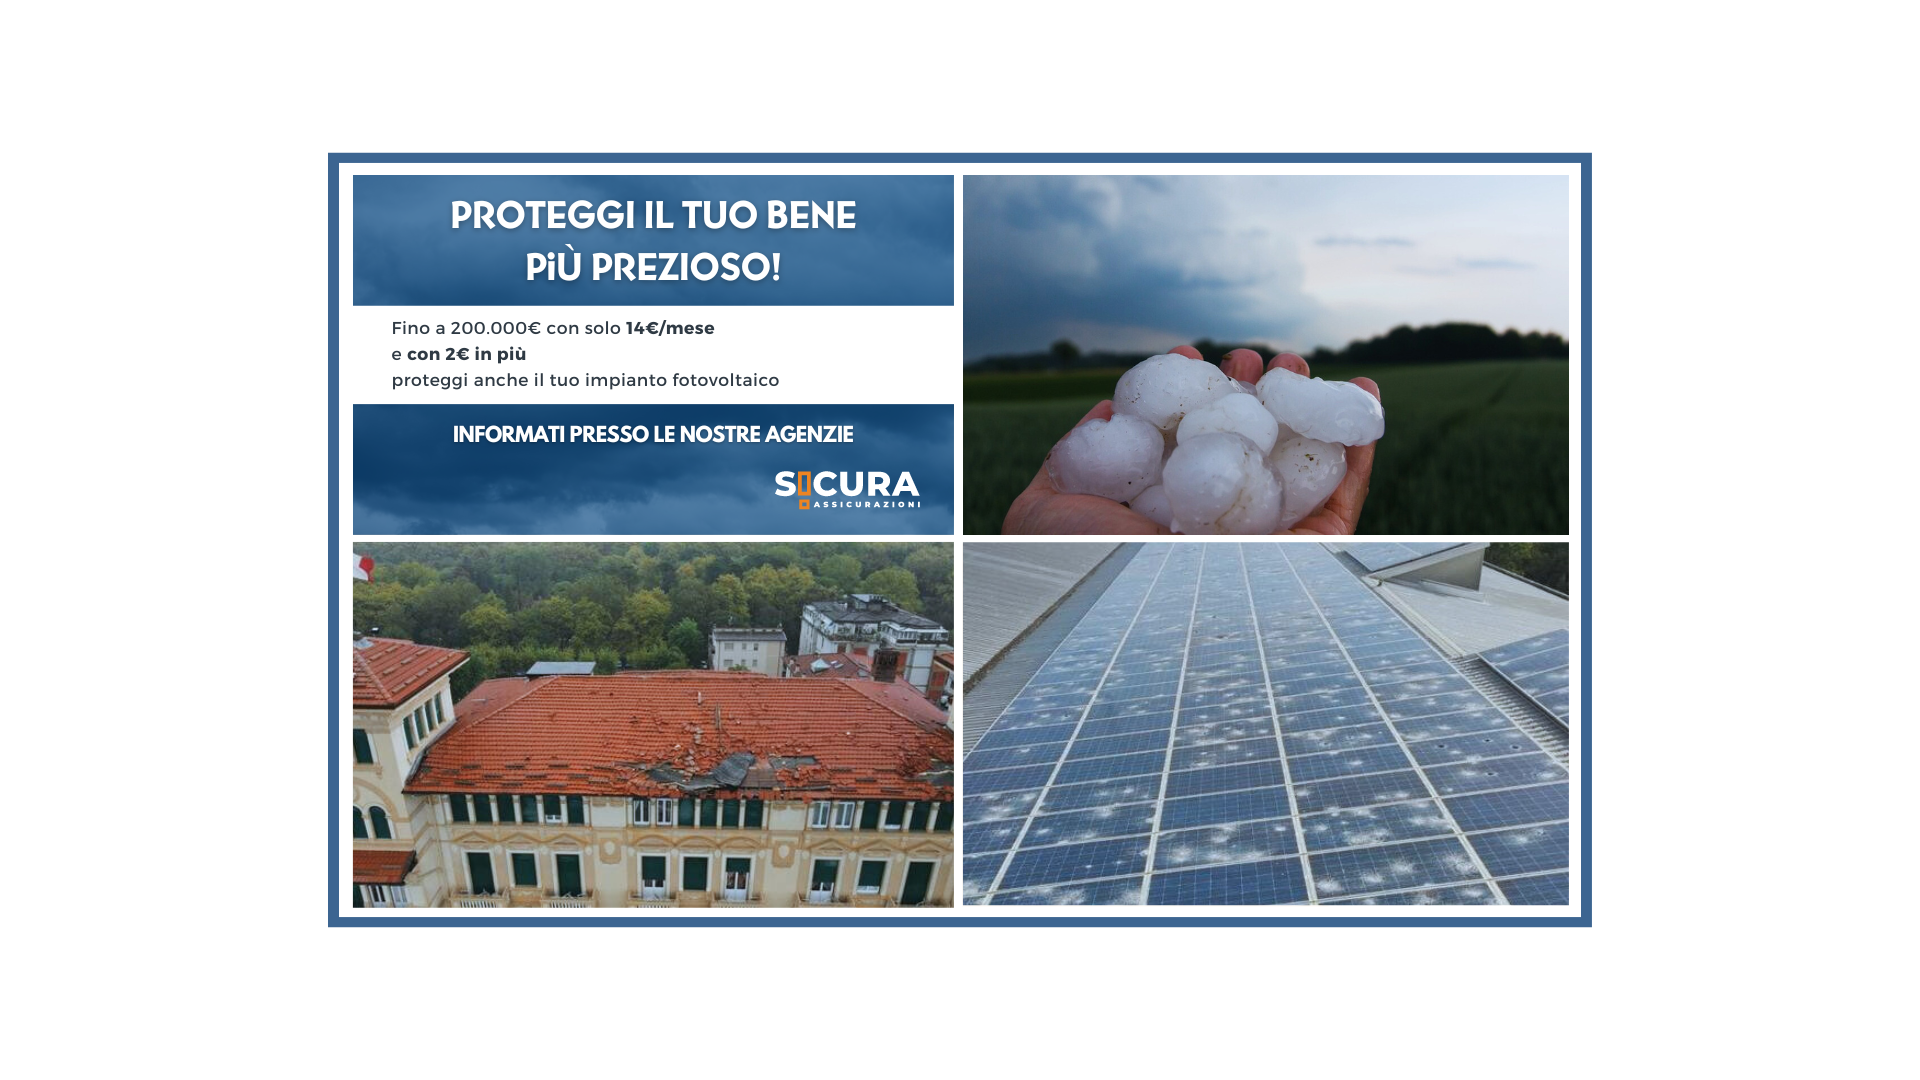 Eventi Atmosferici - Proteggi il tuo patrimonio fino a 200.000€ con solo 14€/mese E con 2€ in più proteggi anche il tuo impianto fotovoltaico - Sicura Assicurazioni